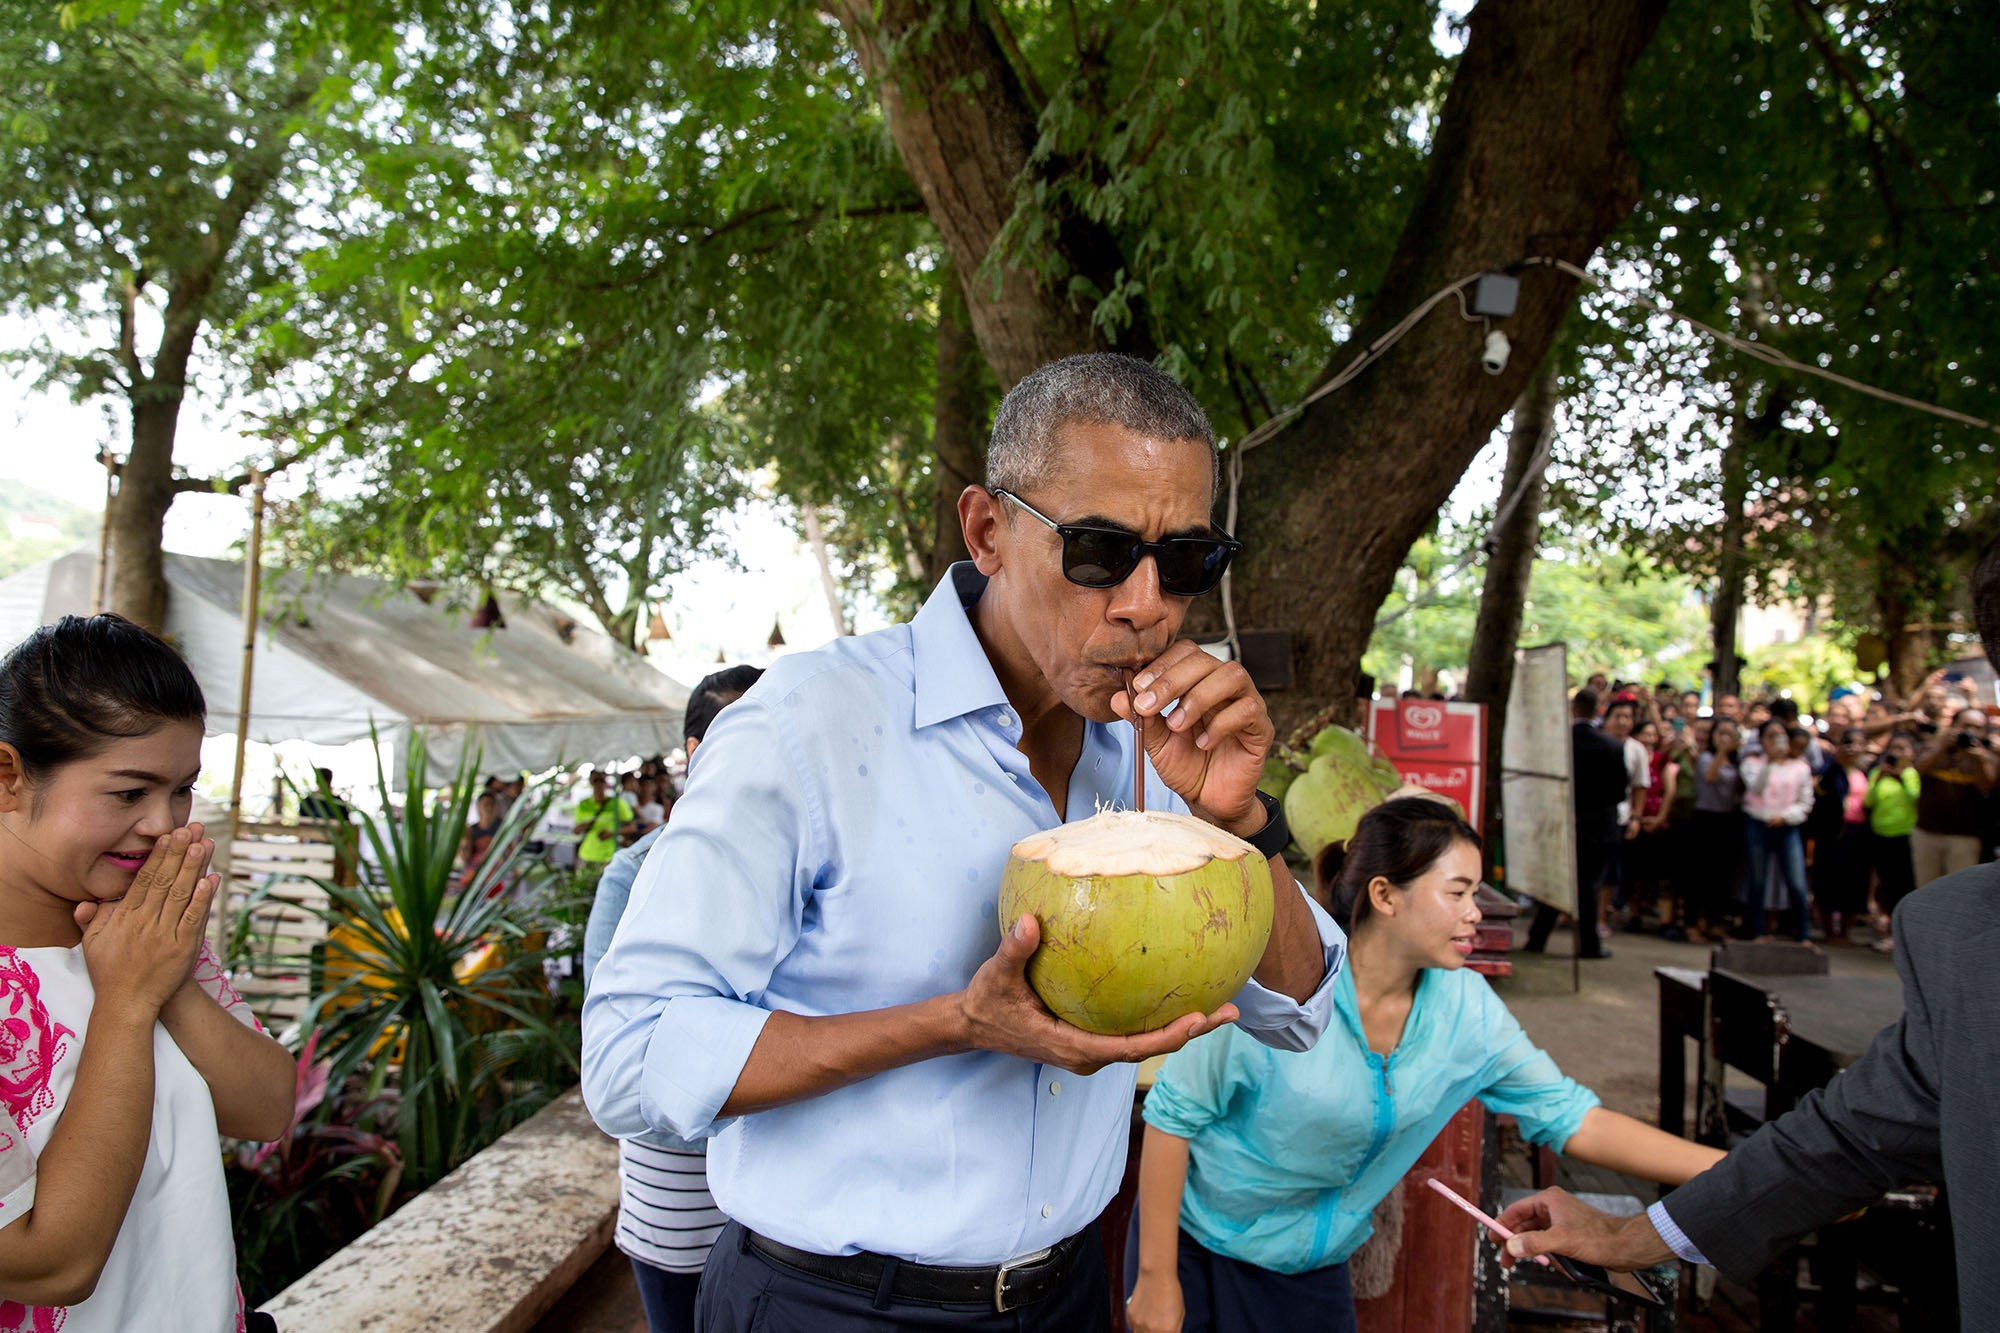 โอบามาดูดน้ำจากลูกมะพร้าวที่เมืองหลวงพระบาง ขณะเดินทางเยือนลาว เมื่อ 7 กันยายน 2559 / Official White House Photo by Pete Souza